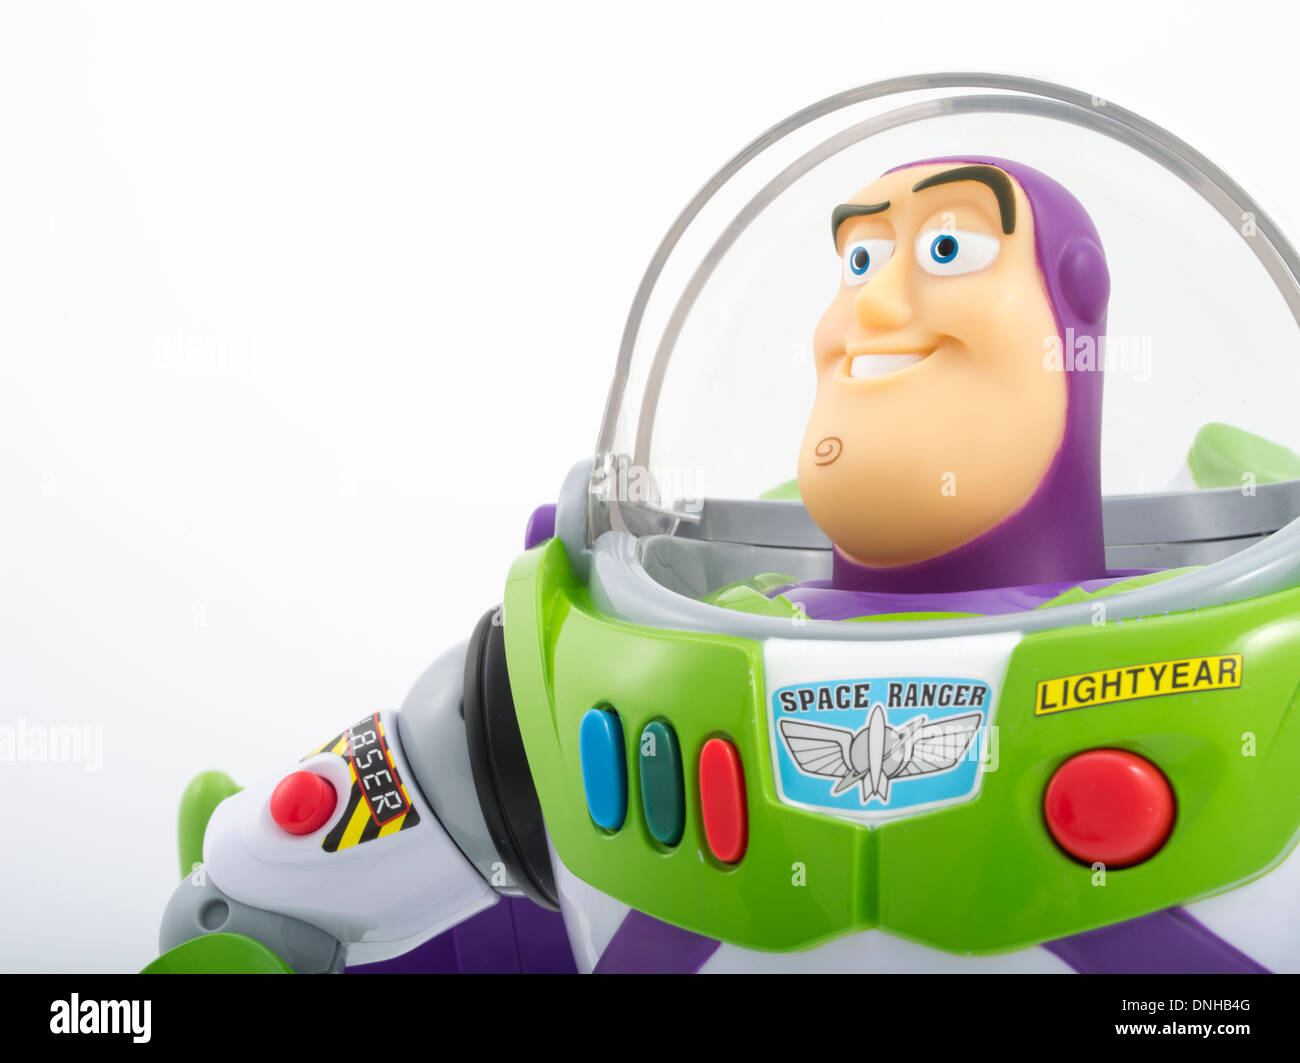 Buzz Lightyear ikonischen Kinderspielzeug aus Toy Story Film produziert von Thinkway Toys Stockfoto